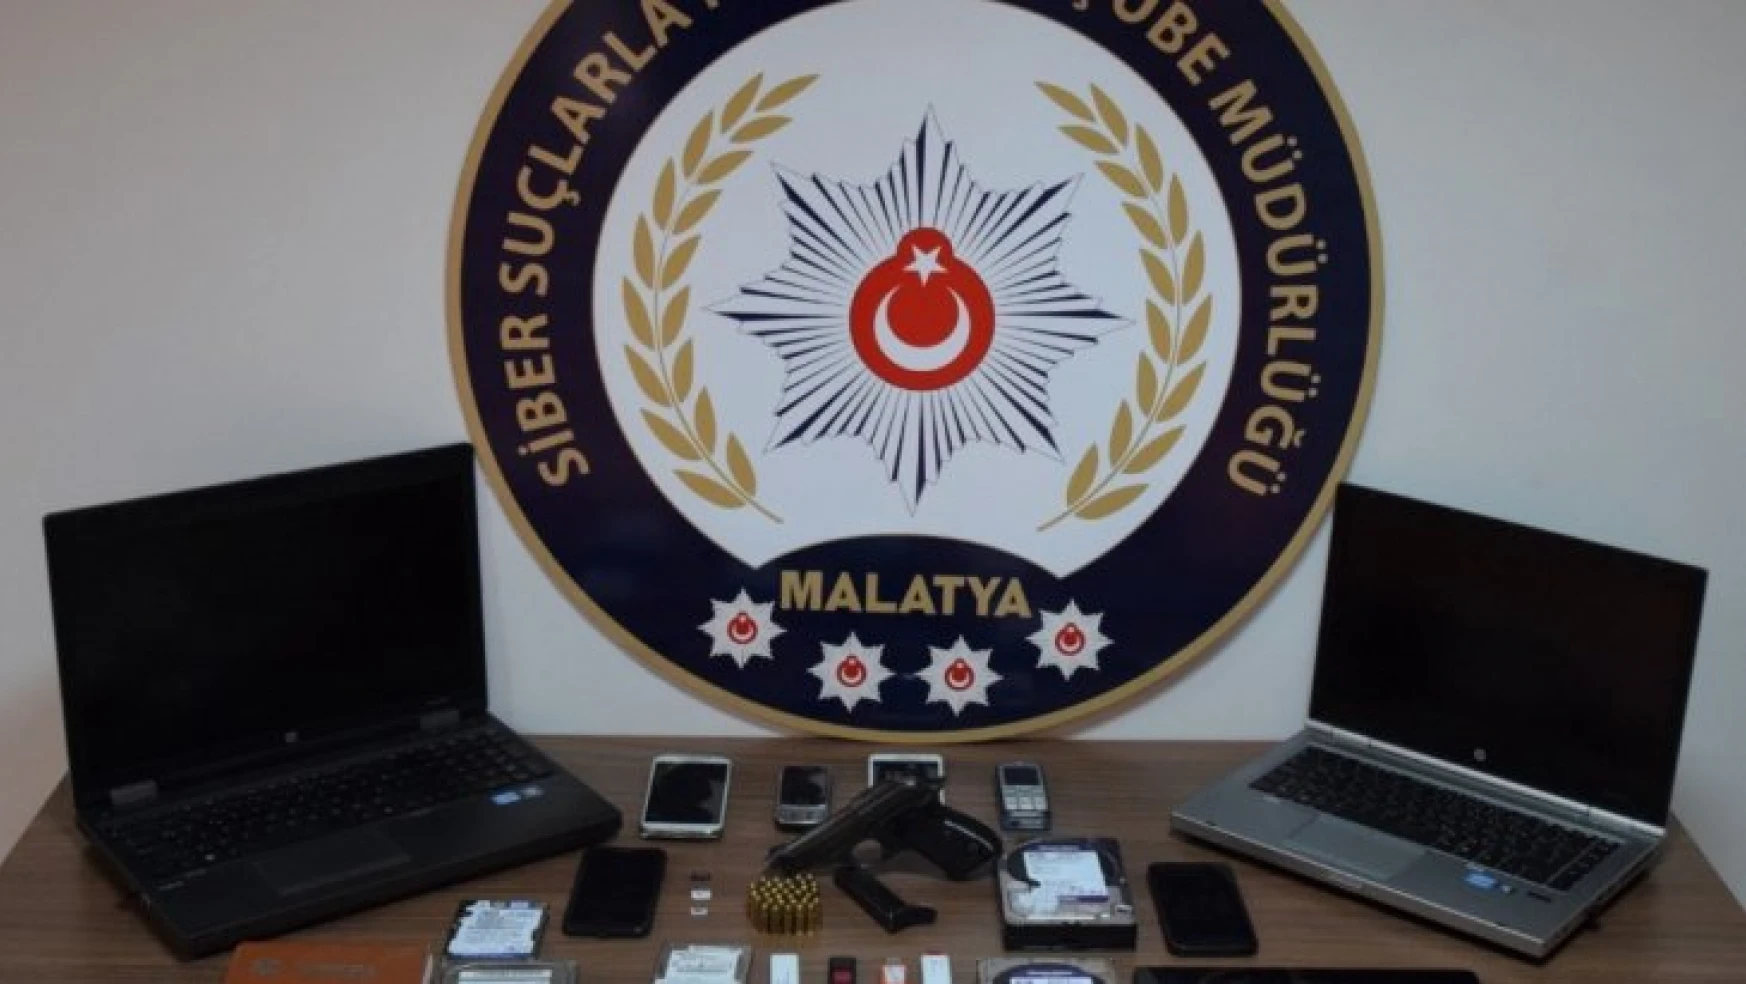 Malatya'da yasa dışı bahis oynatan üç kişi yakalandı